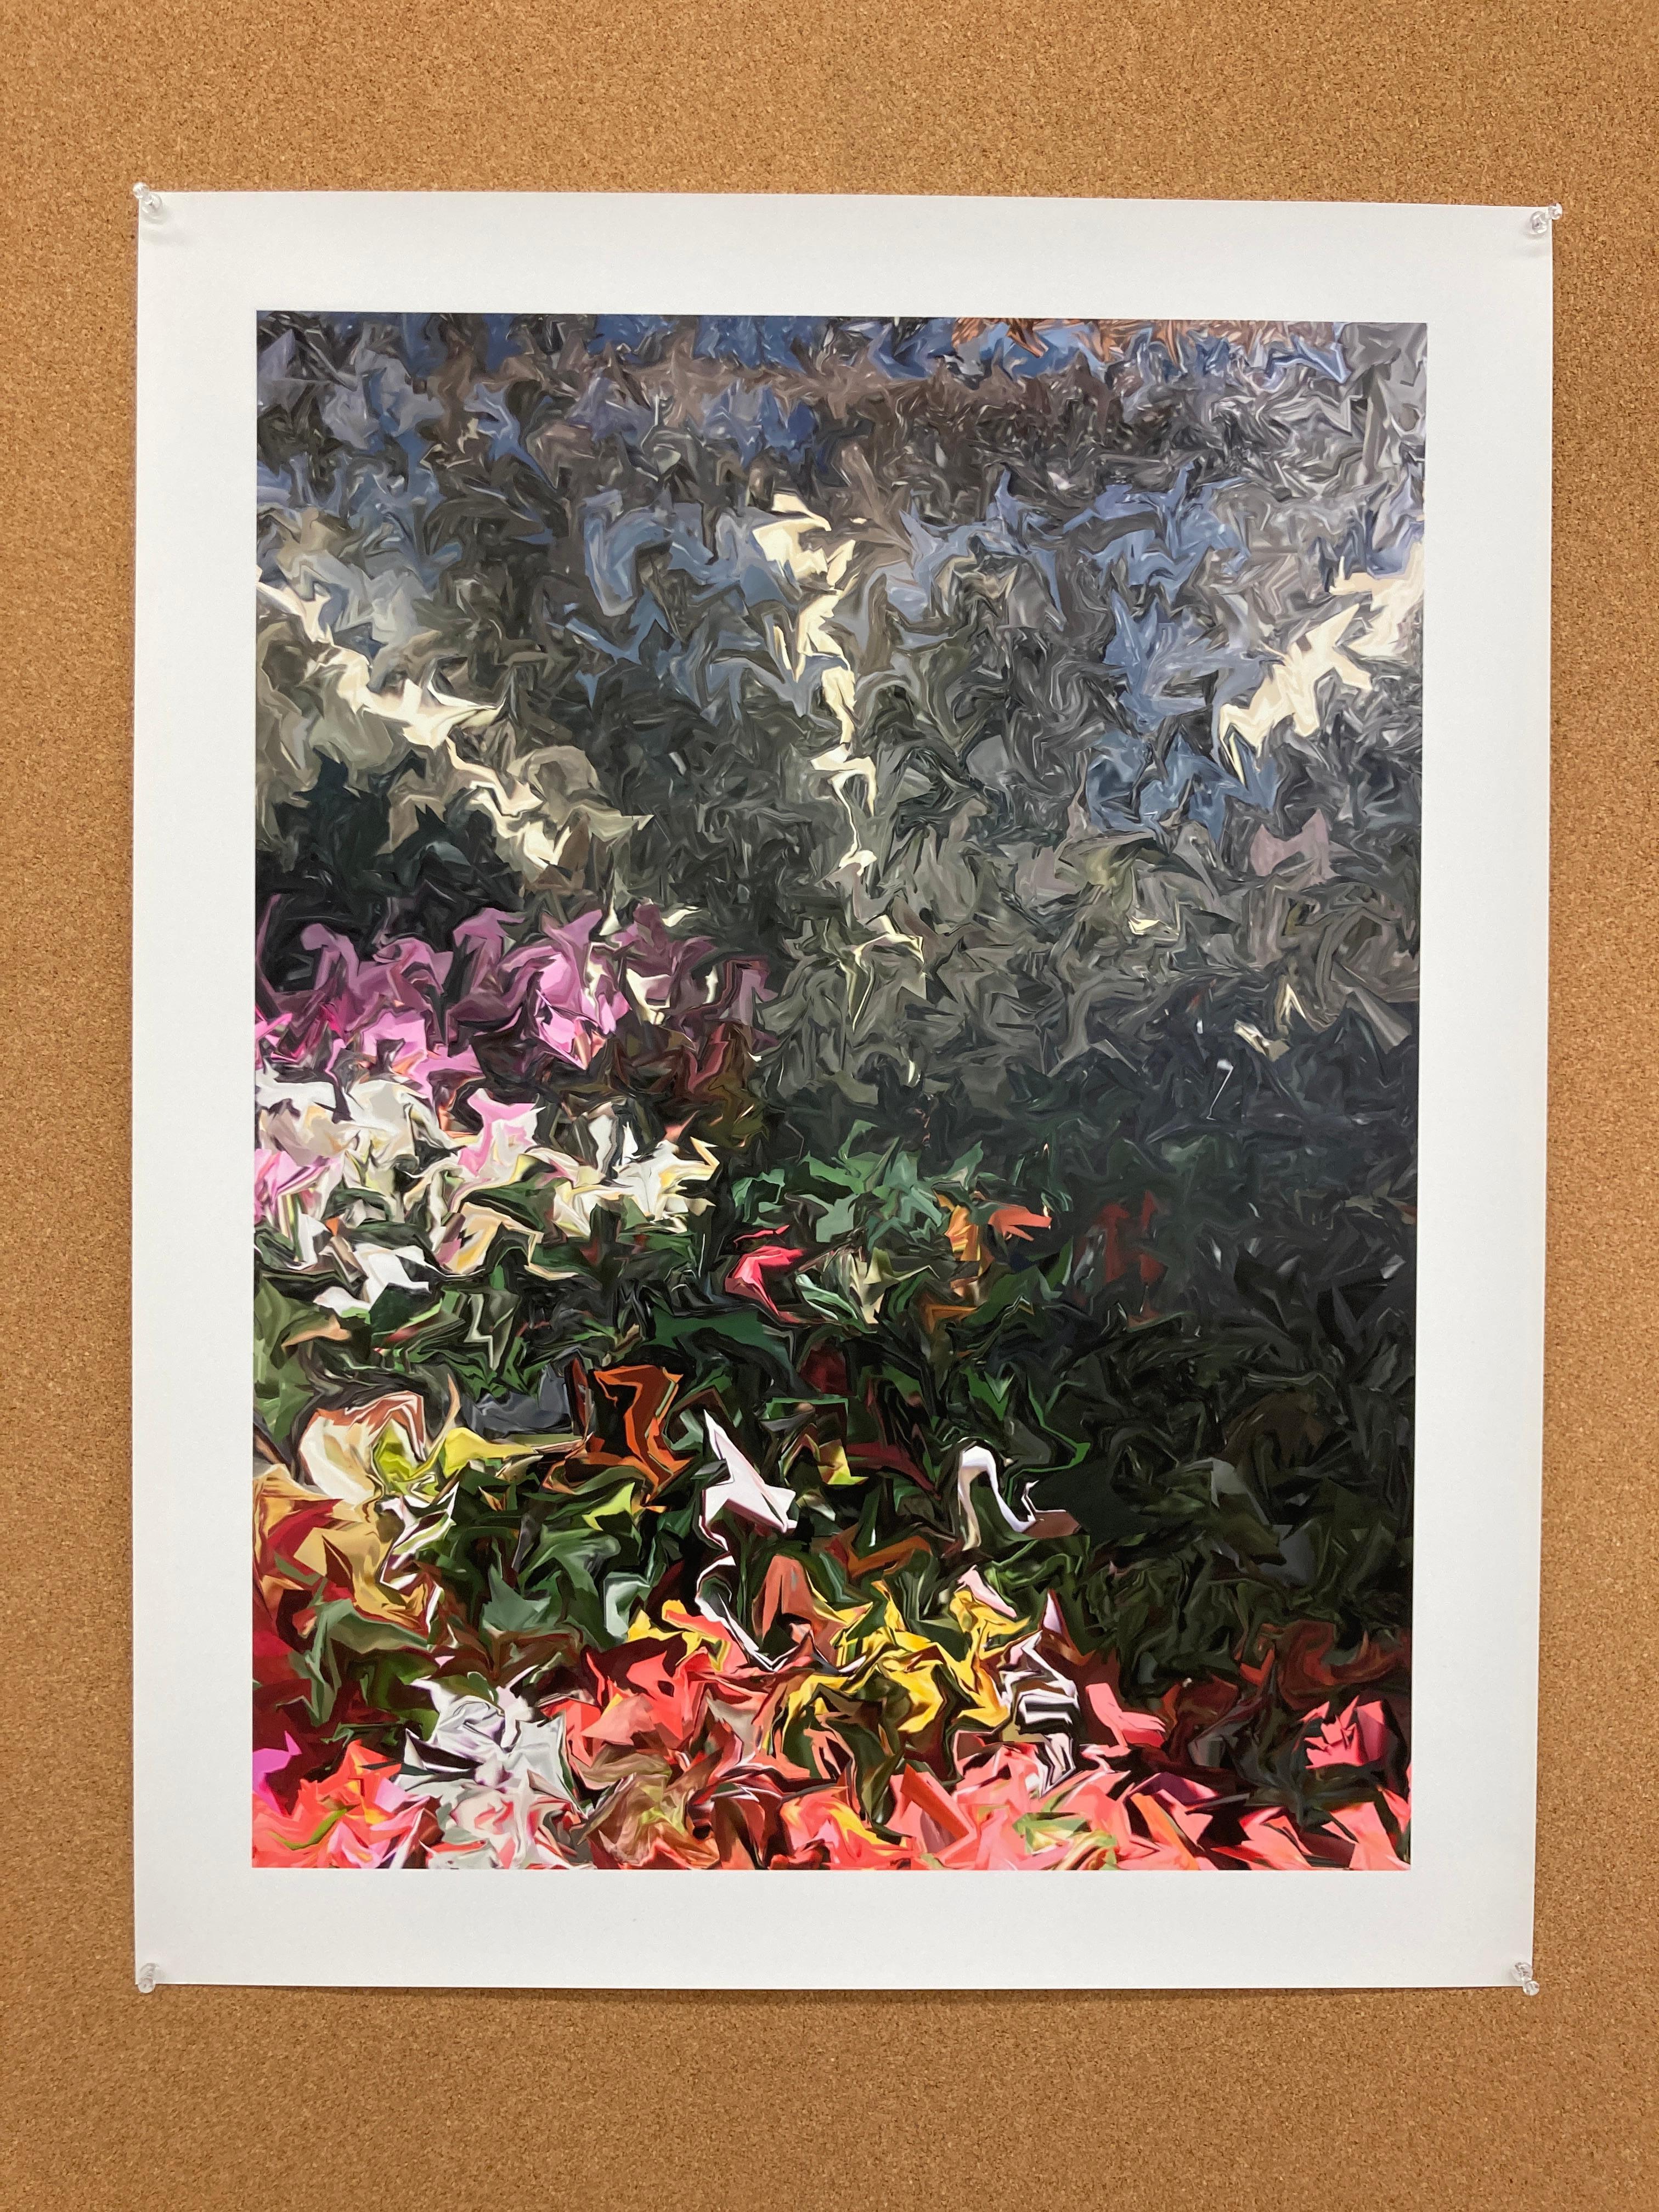 Begonias and Orchids, 2018, photographie manipulée numériquement, signée - Print de Gary Cruz